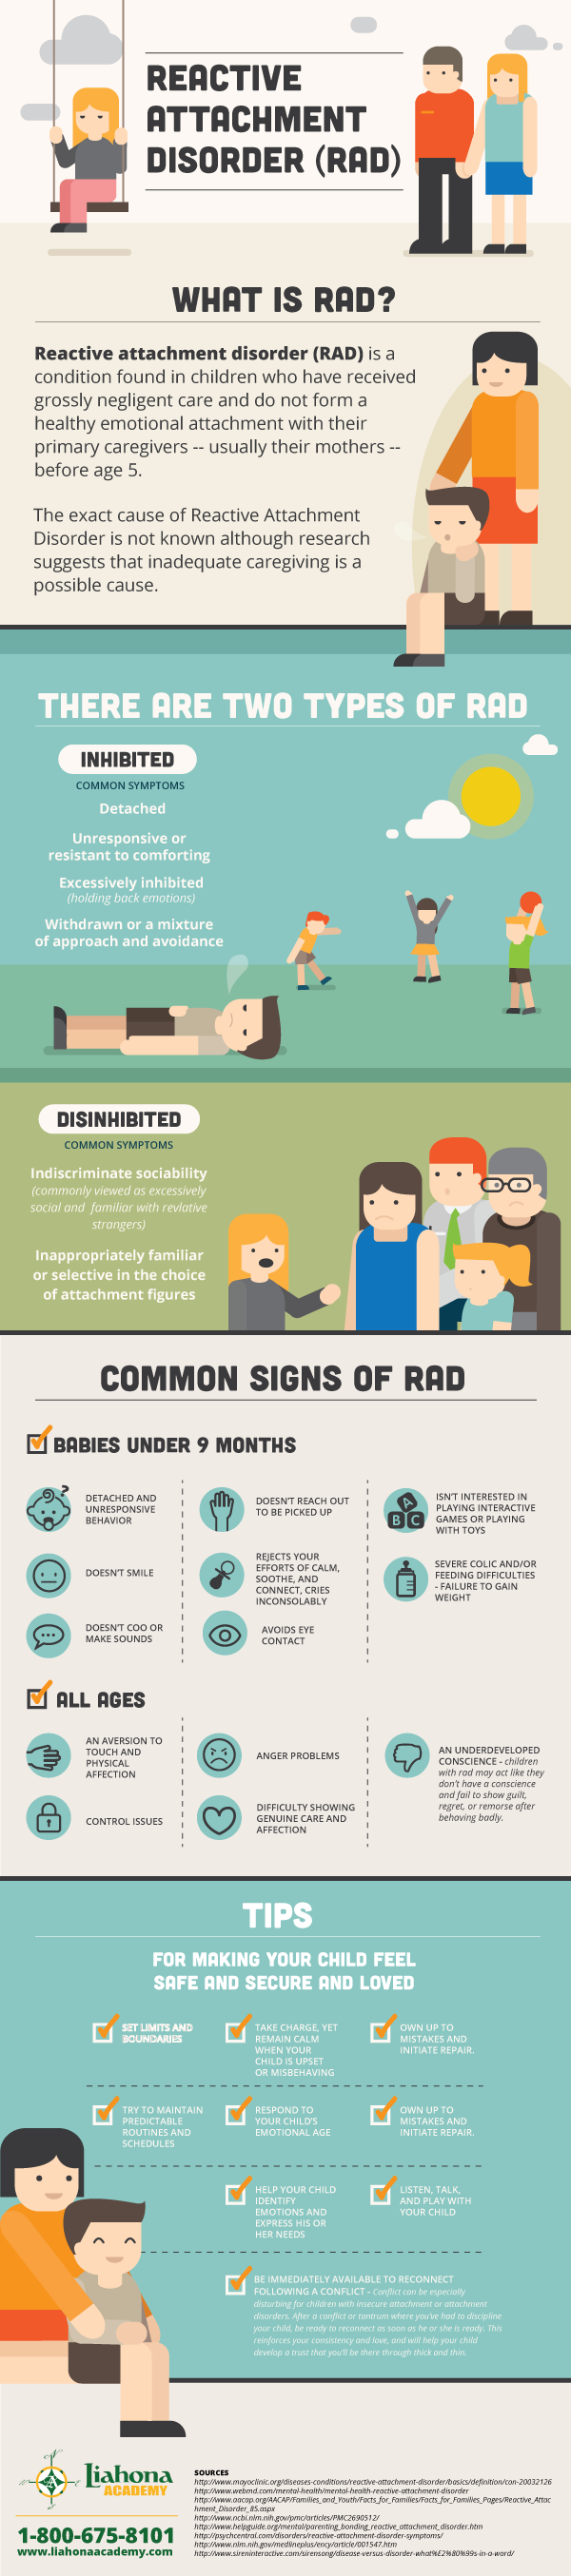 rad disorder in children